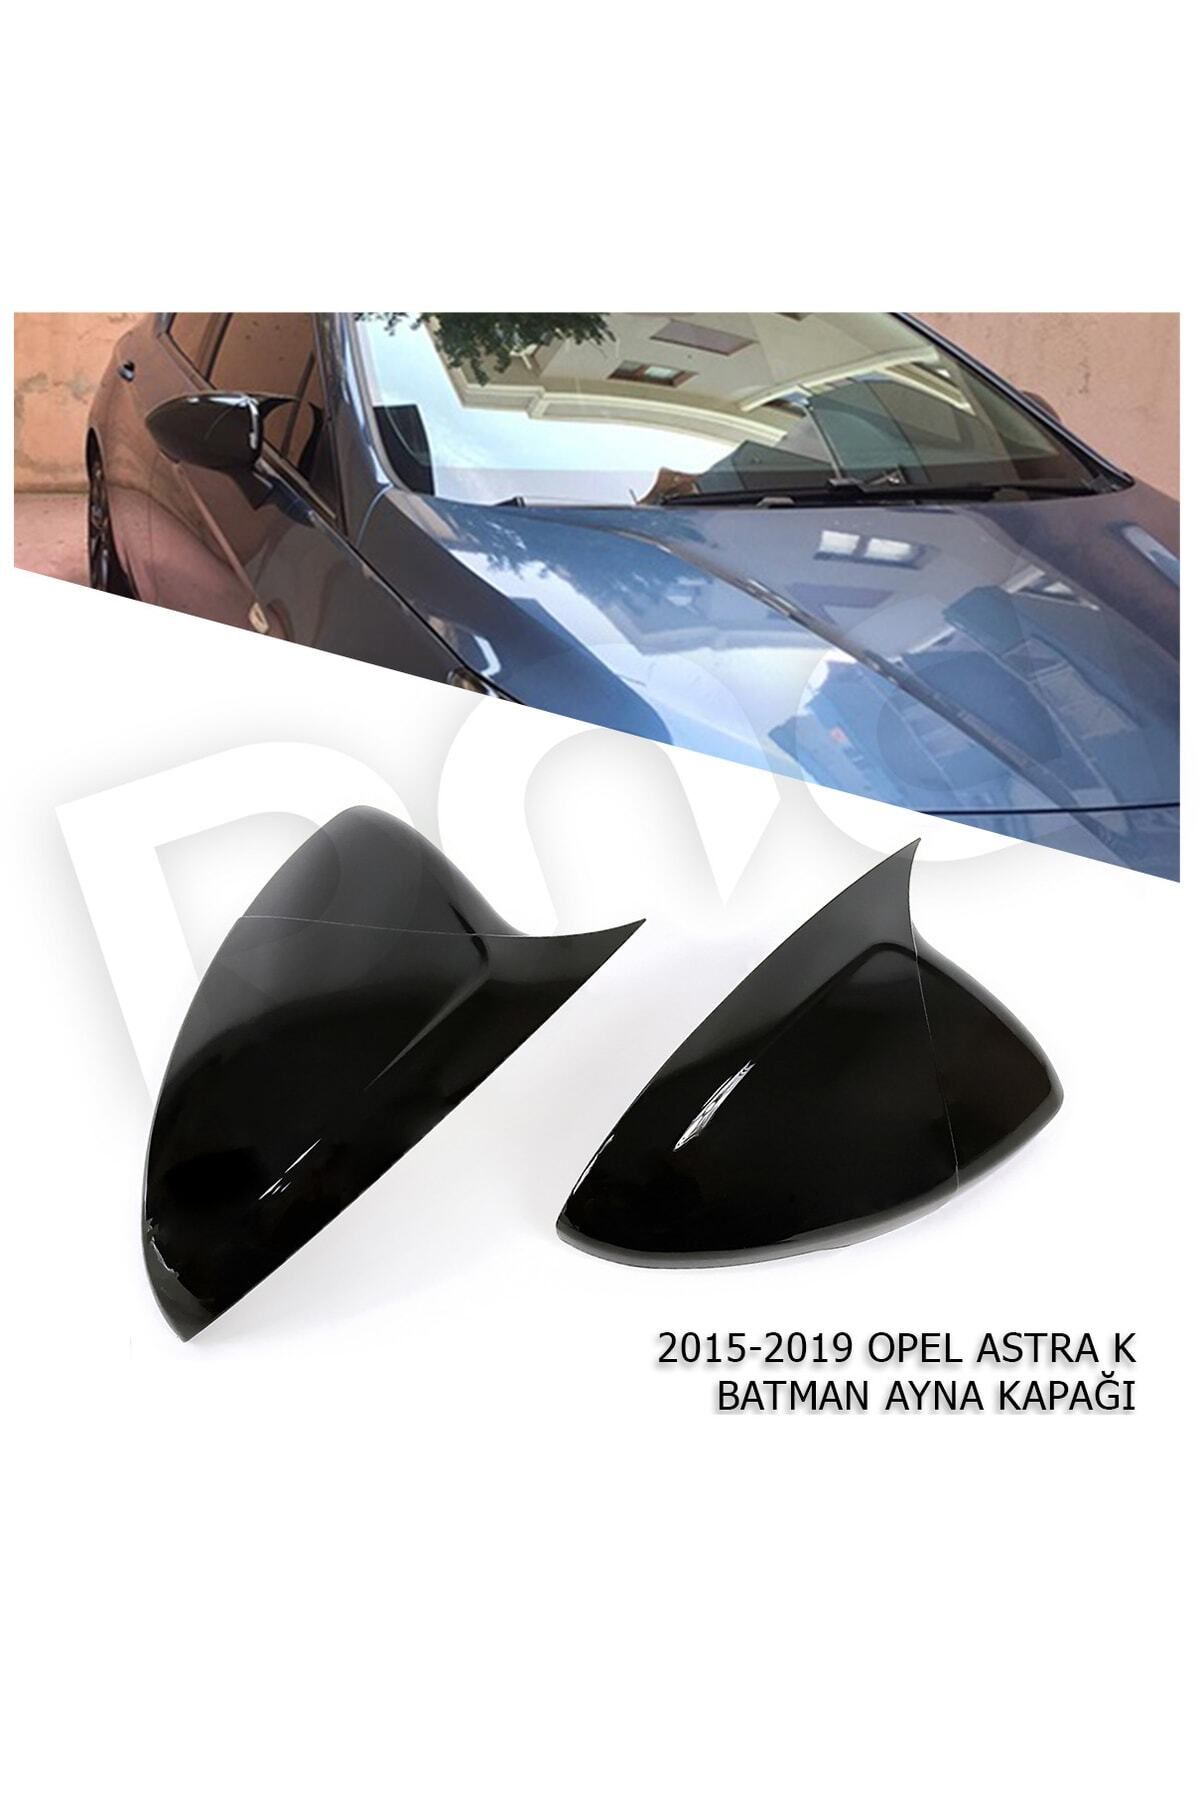 Opel 2015-2019 Astra K Batman Ayna Kapağı